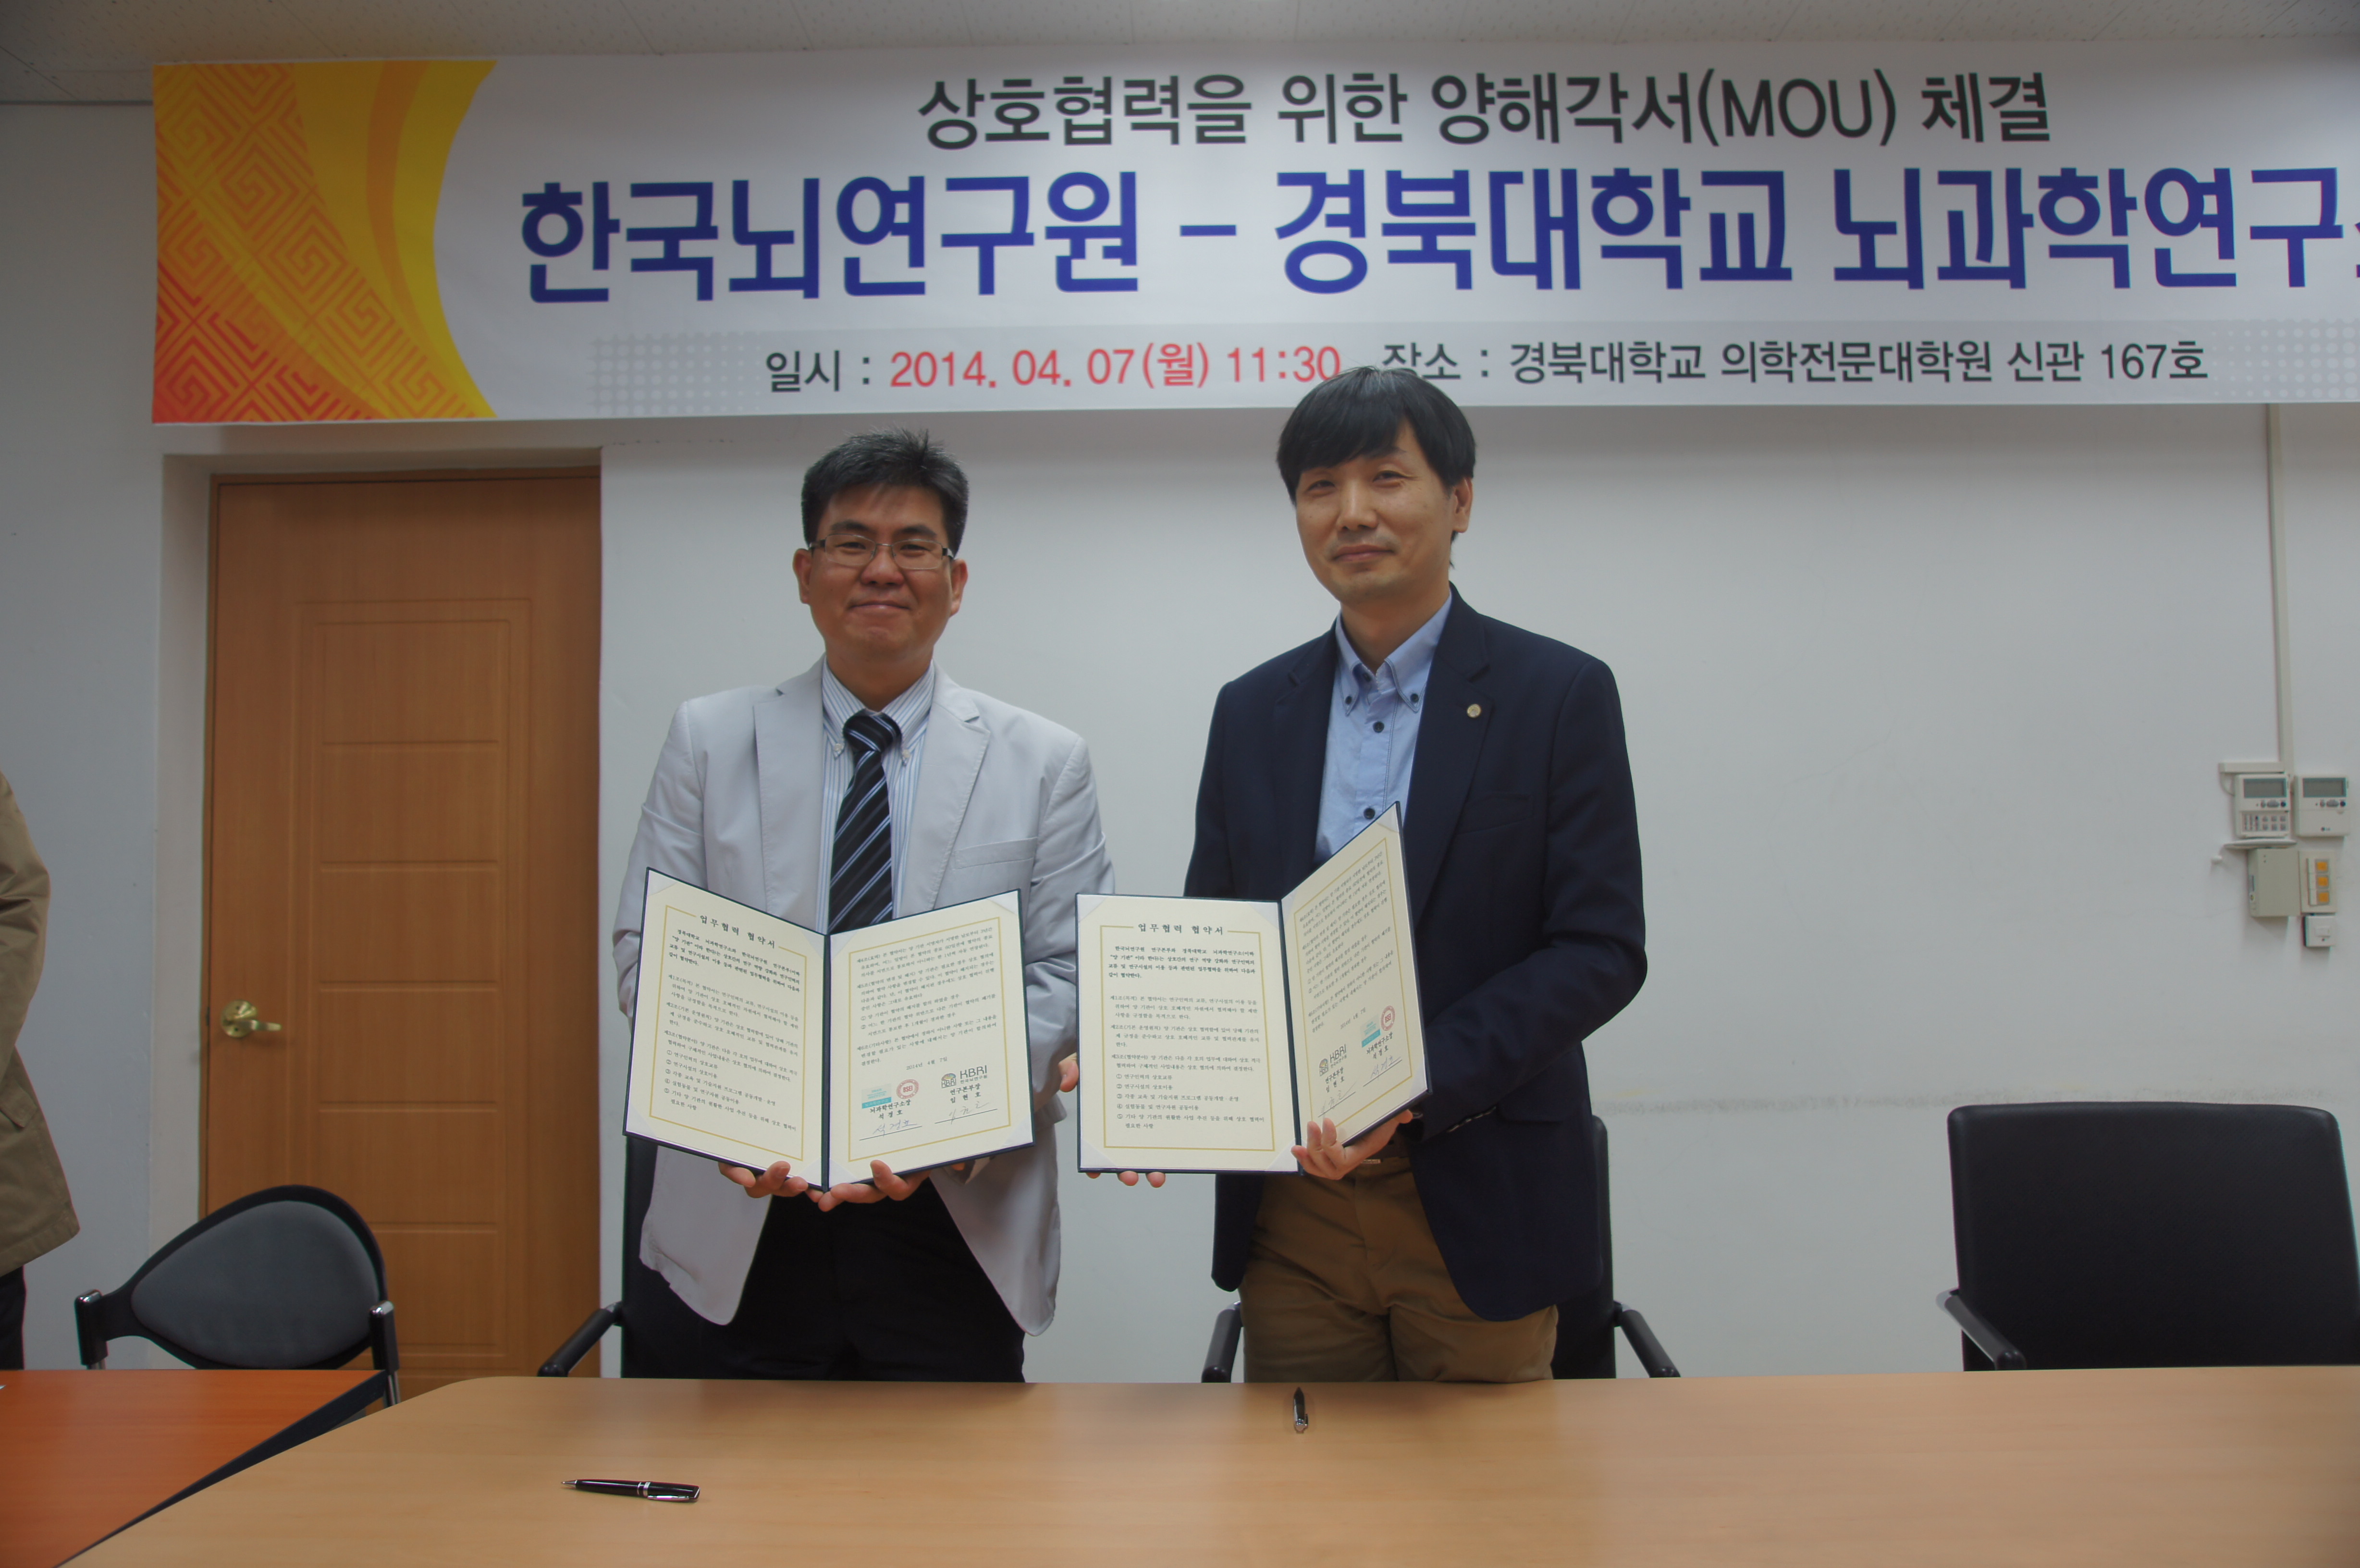 한국뇌연구원-경북대학교 뇌과학연구소 MOU 체결식 (2014.04.07)